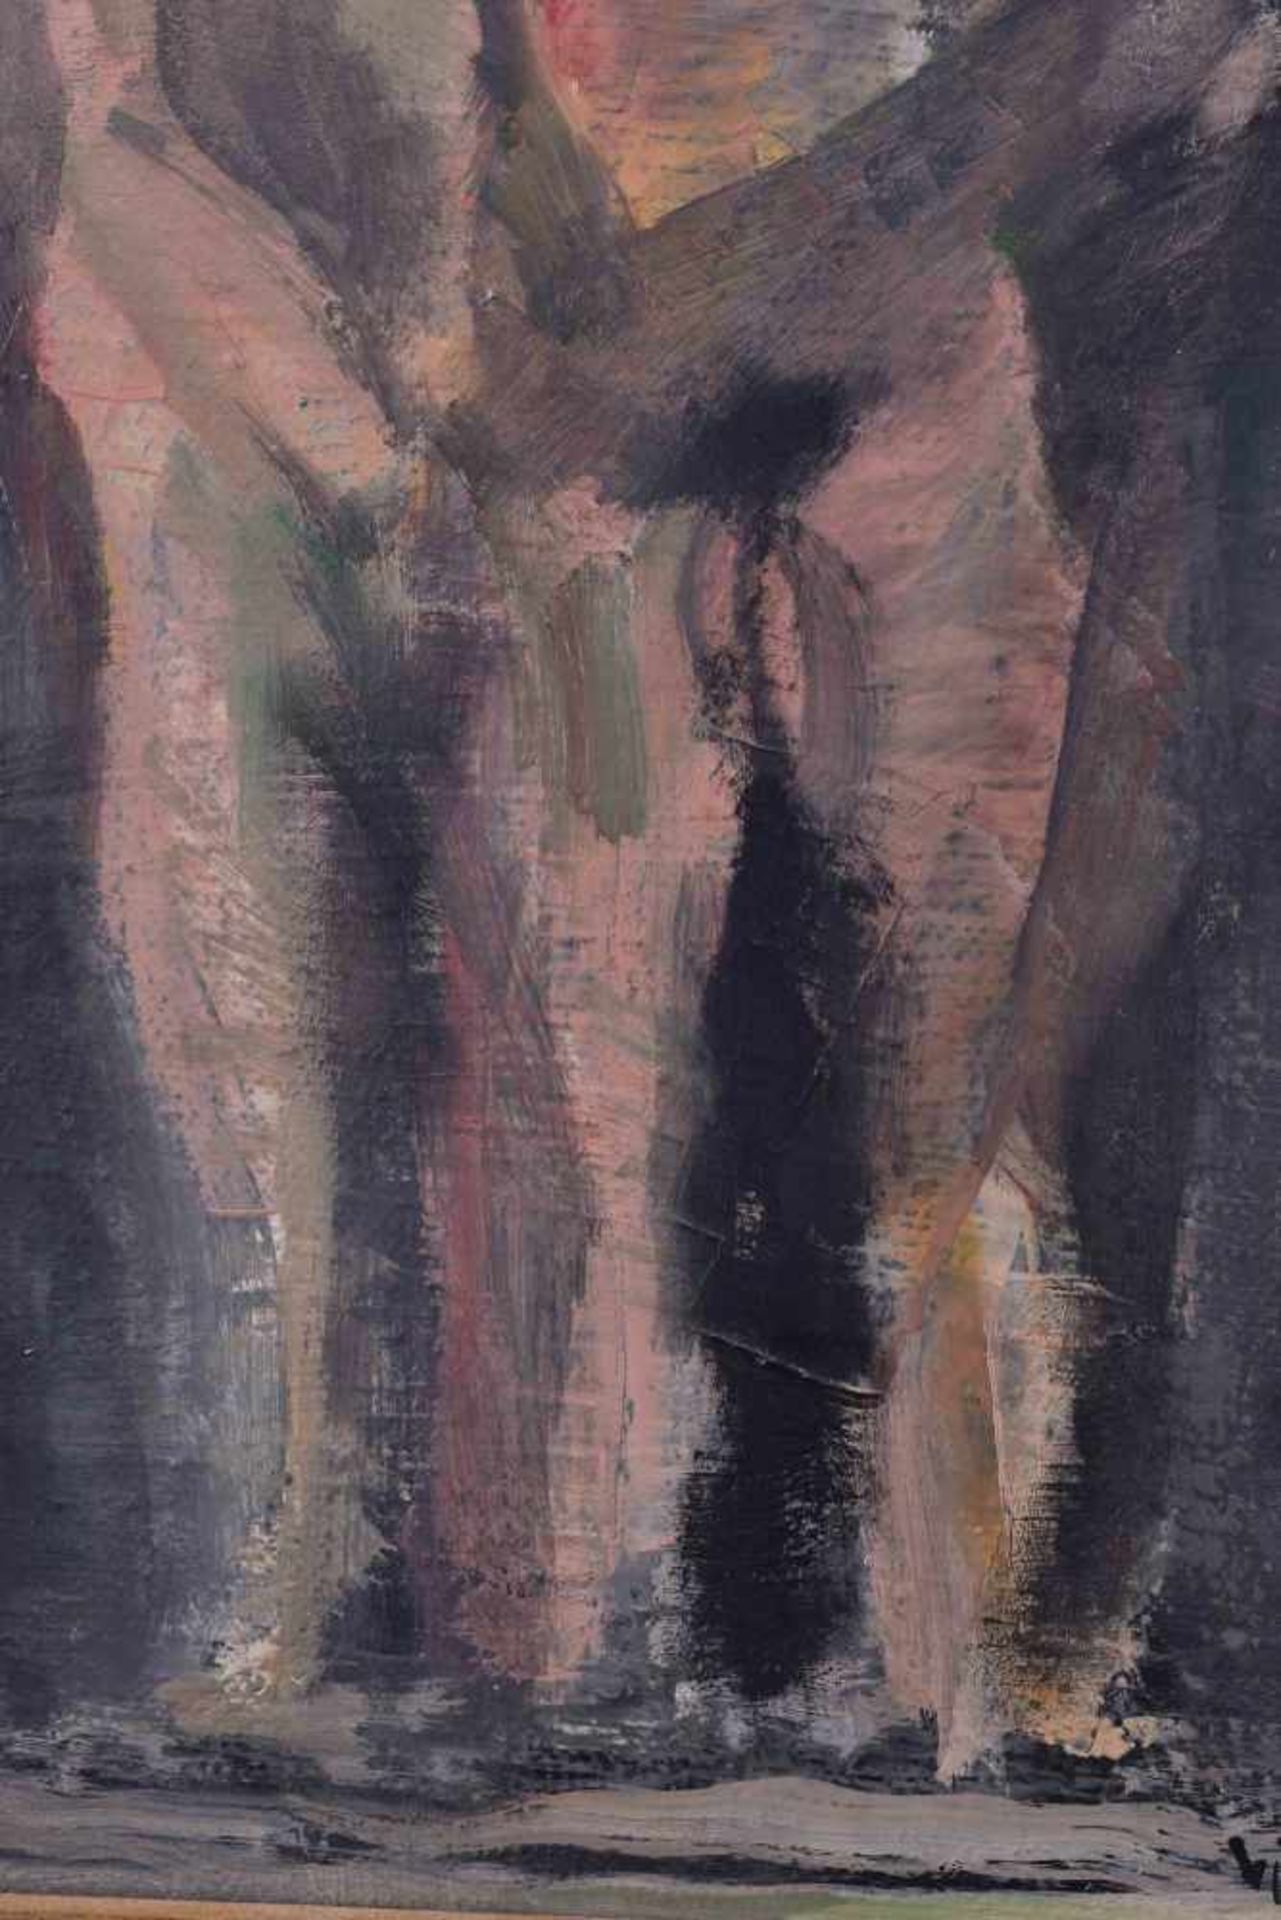 Hans VENT (1934-2018)"Paar"painting oil / canvas, 29.5 cm x 24 cm, with frame, 43.5 cm x 27.5 cm, - Image 3 of 6